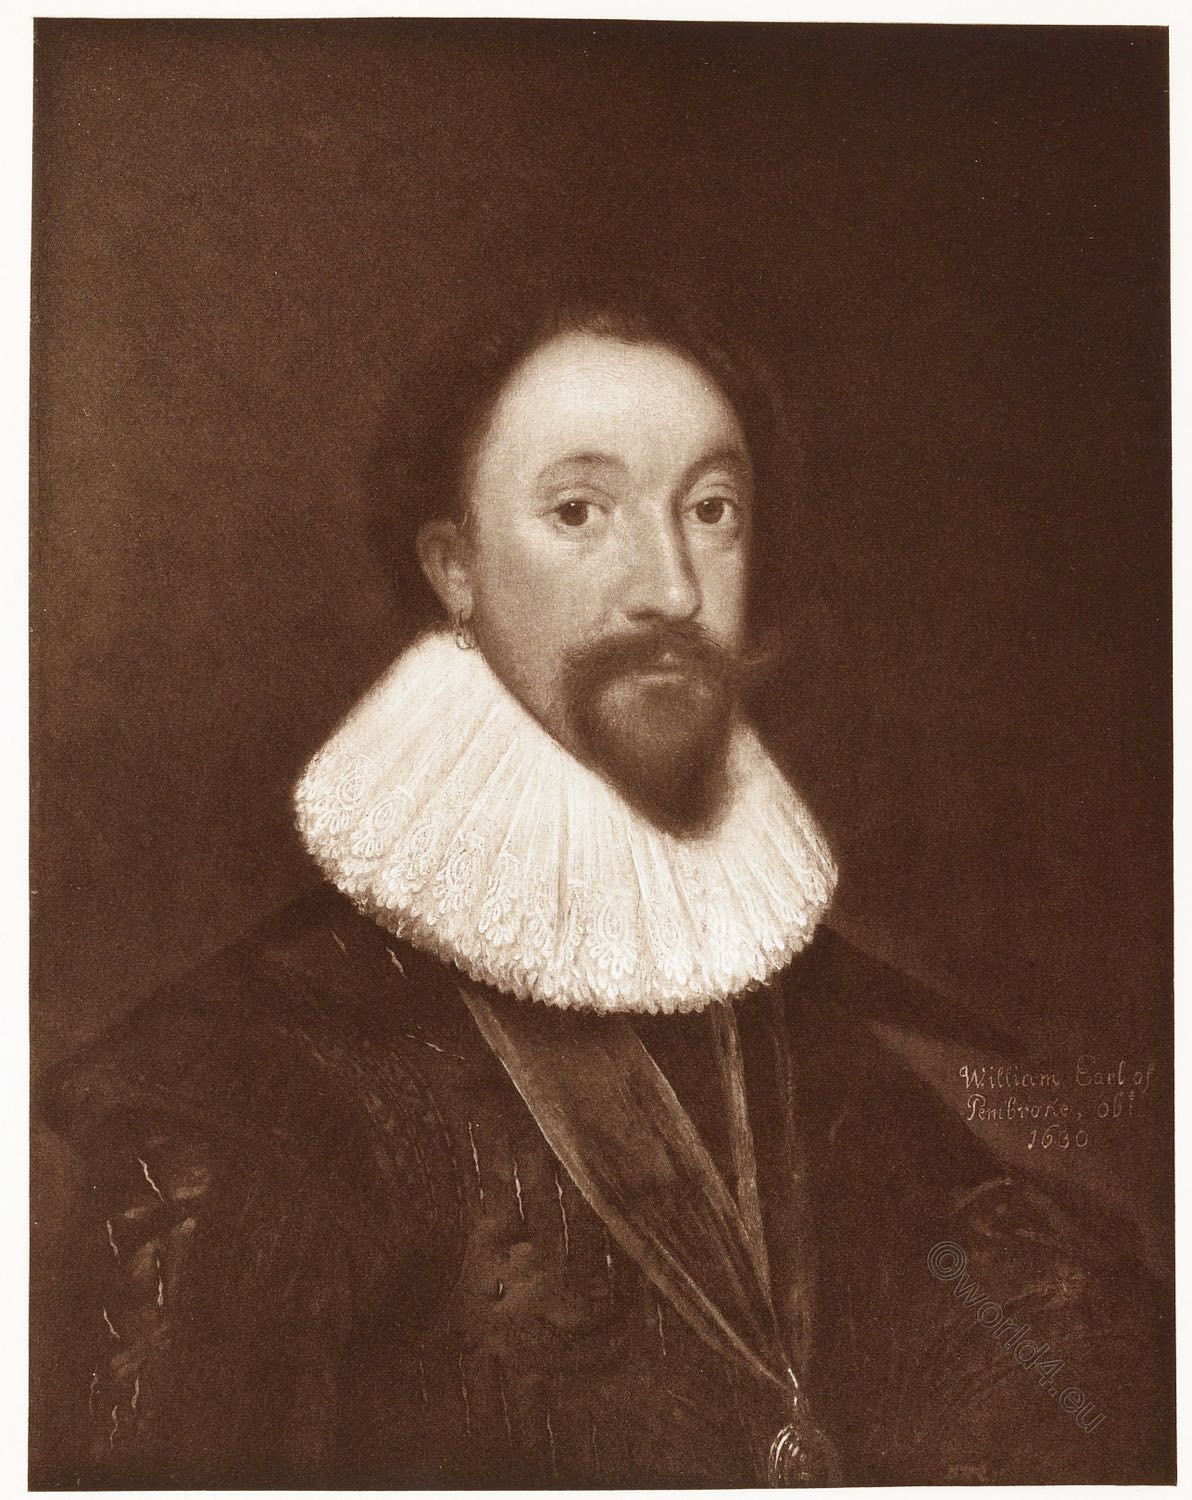 William Earl of Pembroke